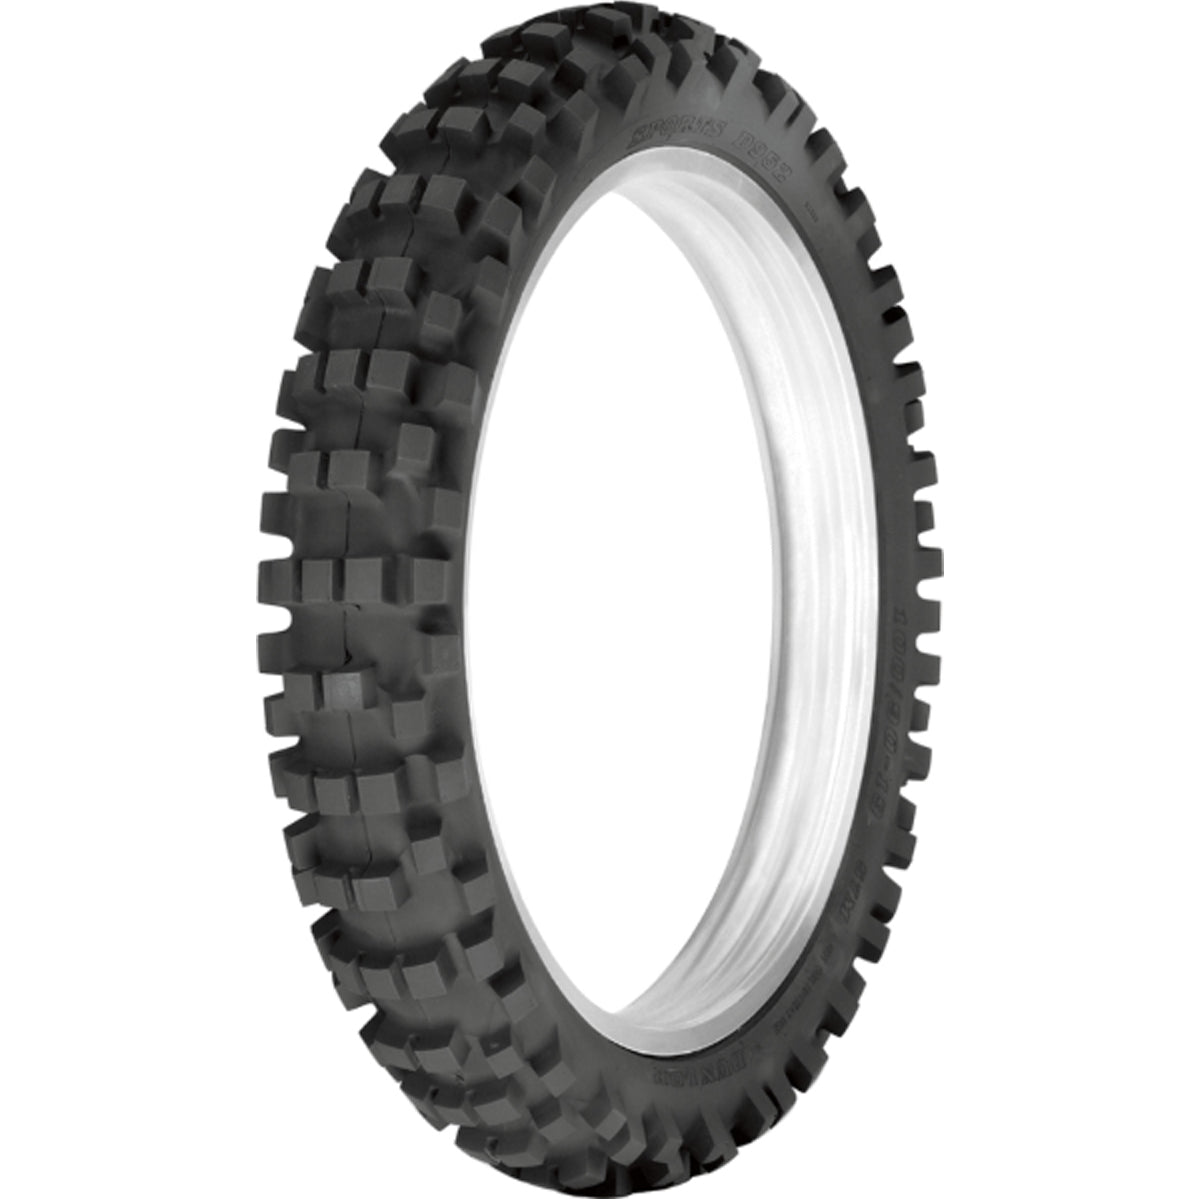 Dunlop D952 19" Rear Off-Road Tires-0313